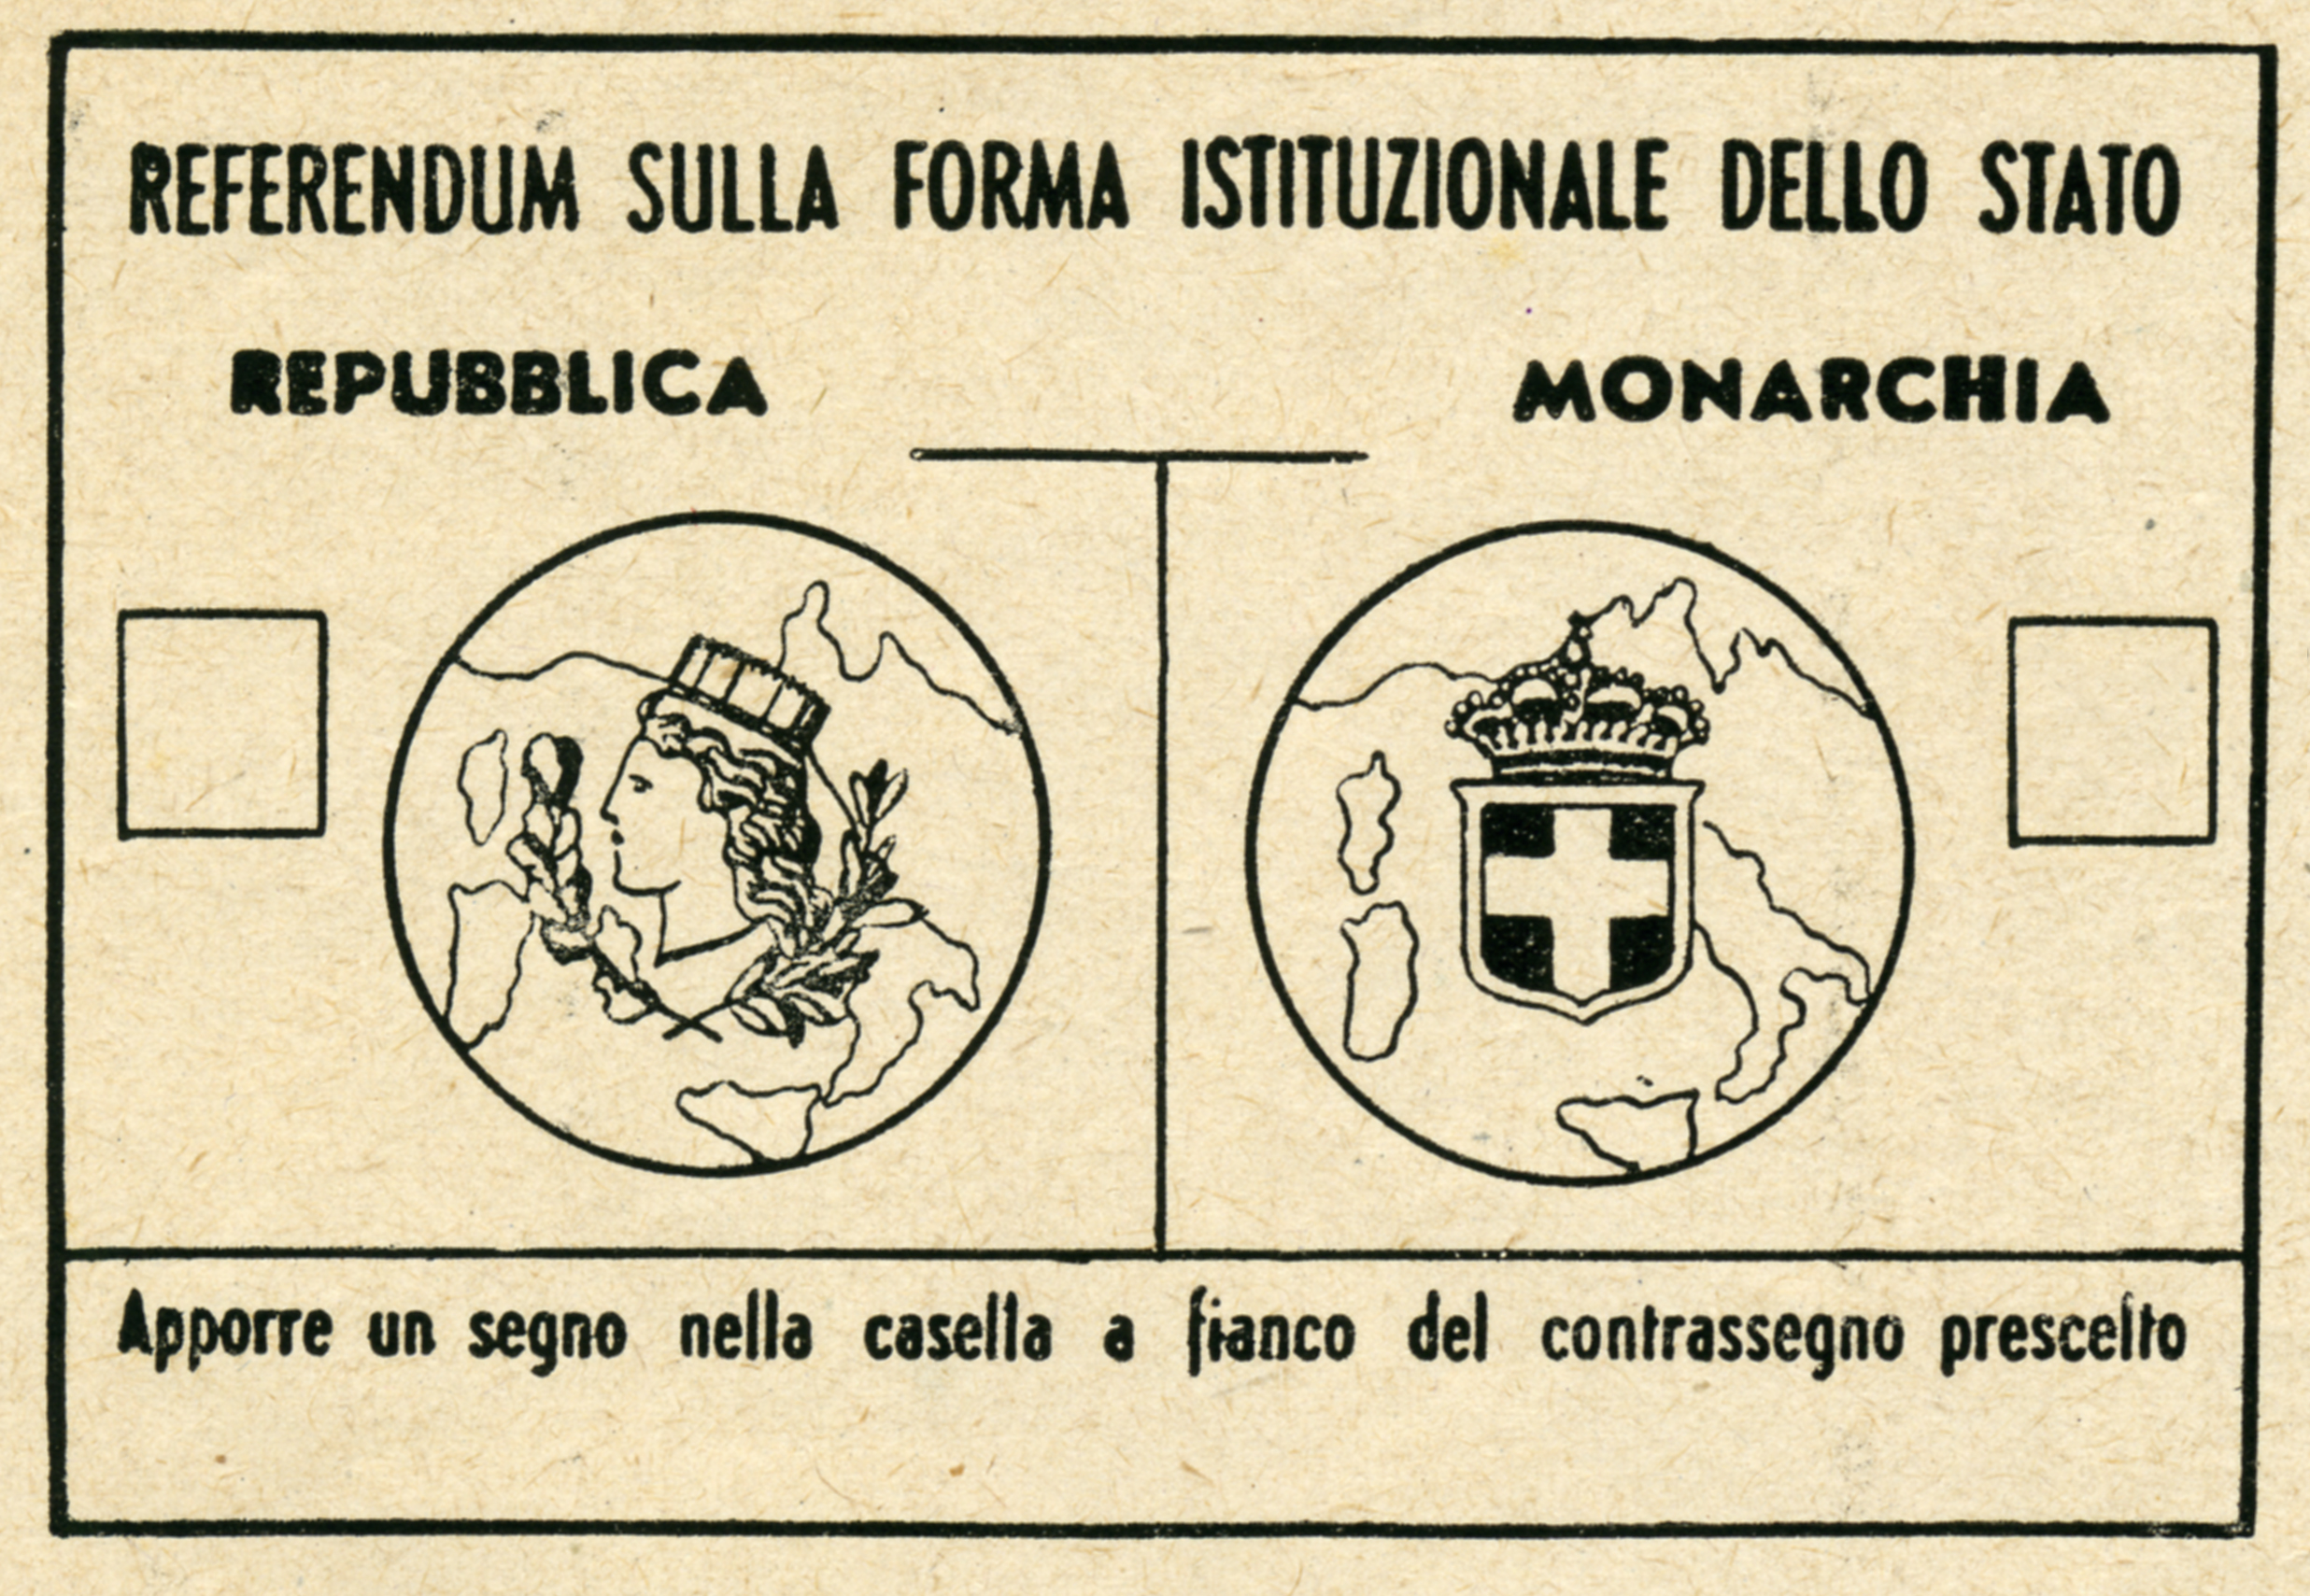 Storia della Costituzione. La scheda che gli elettori italiani ricevettero il 2 giugno 1946, in occasione del referendum sulla forma istituzionale dello Stato. Nello stesso giorno furono scelti i membri dell'Assemblea costituente, che nei 18 mesi successivi avrebbe elaborato la Costituzione